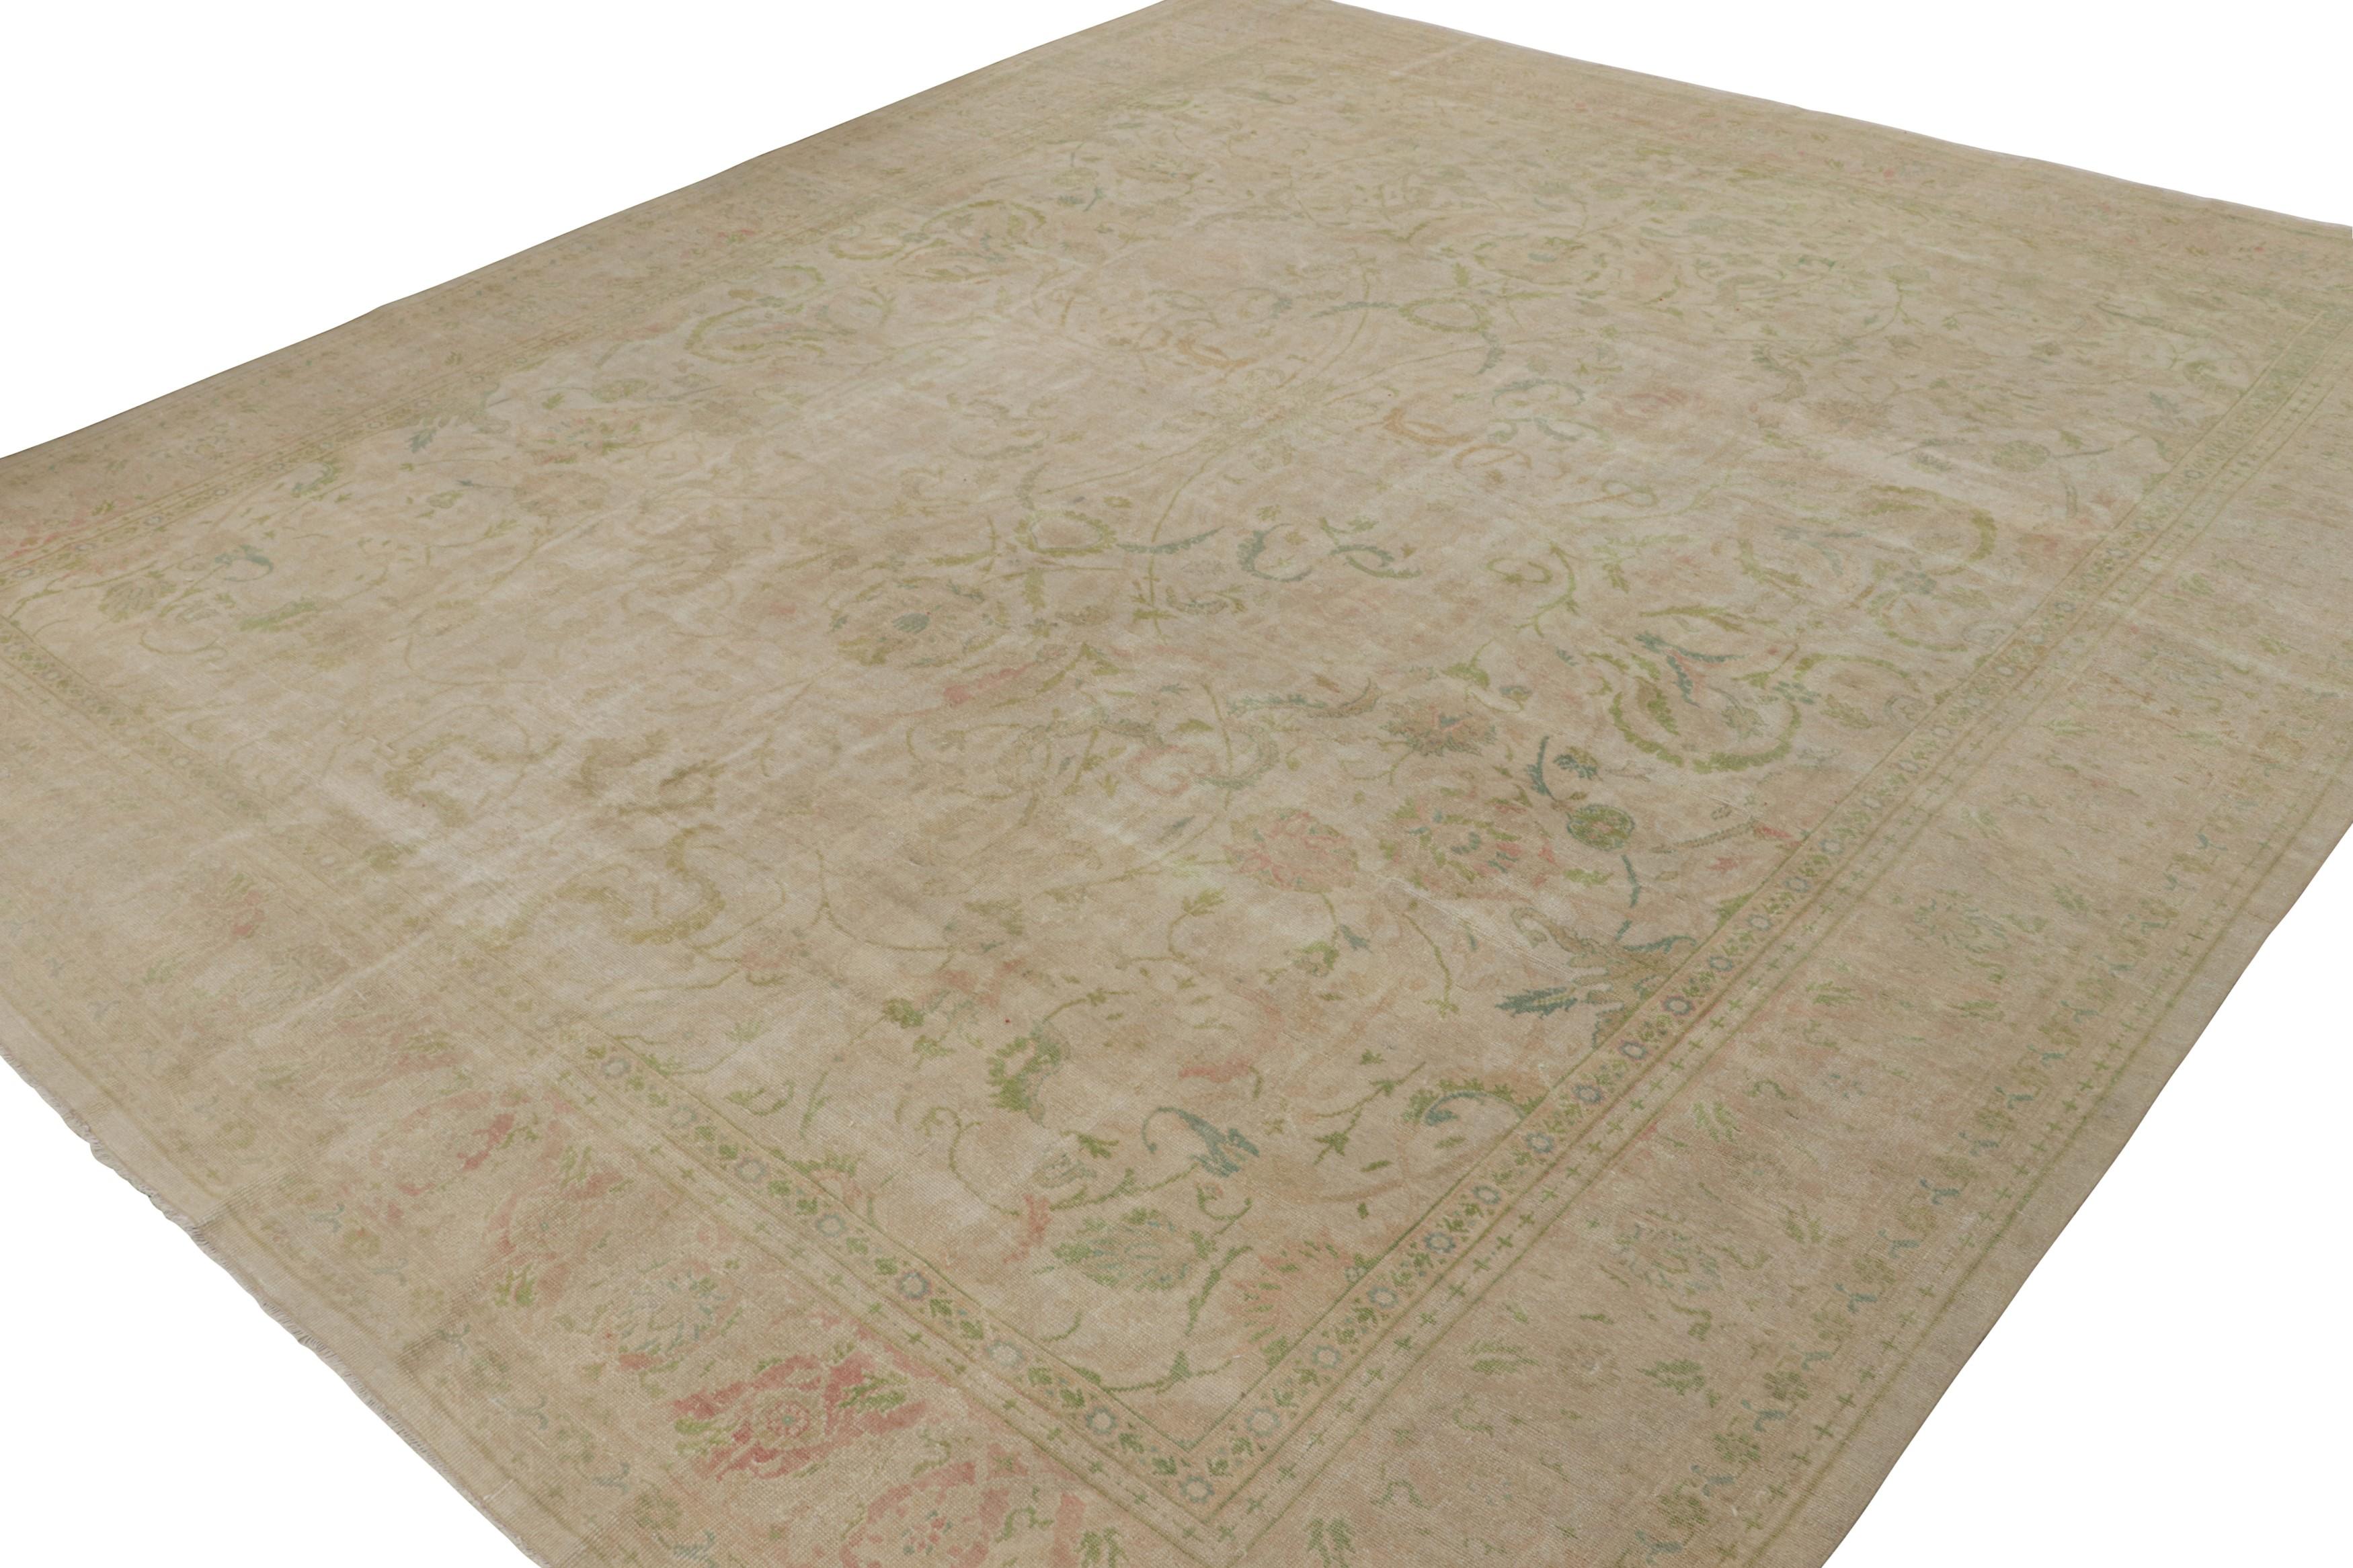 Dieser 12x14 große antike Sivas-Teppich aus der Türkei (ca. 1920-1930) wurde von Hand aus Wolle geknüpft und zeigt rosa und grüne Blumenmuster mit einem beigen Unterton. 

Über das Design: 

Mit ähnlichen königlichen Farben wie die Oushak-Teppiche